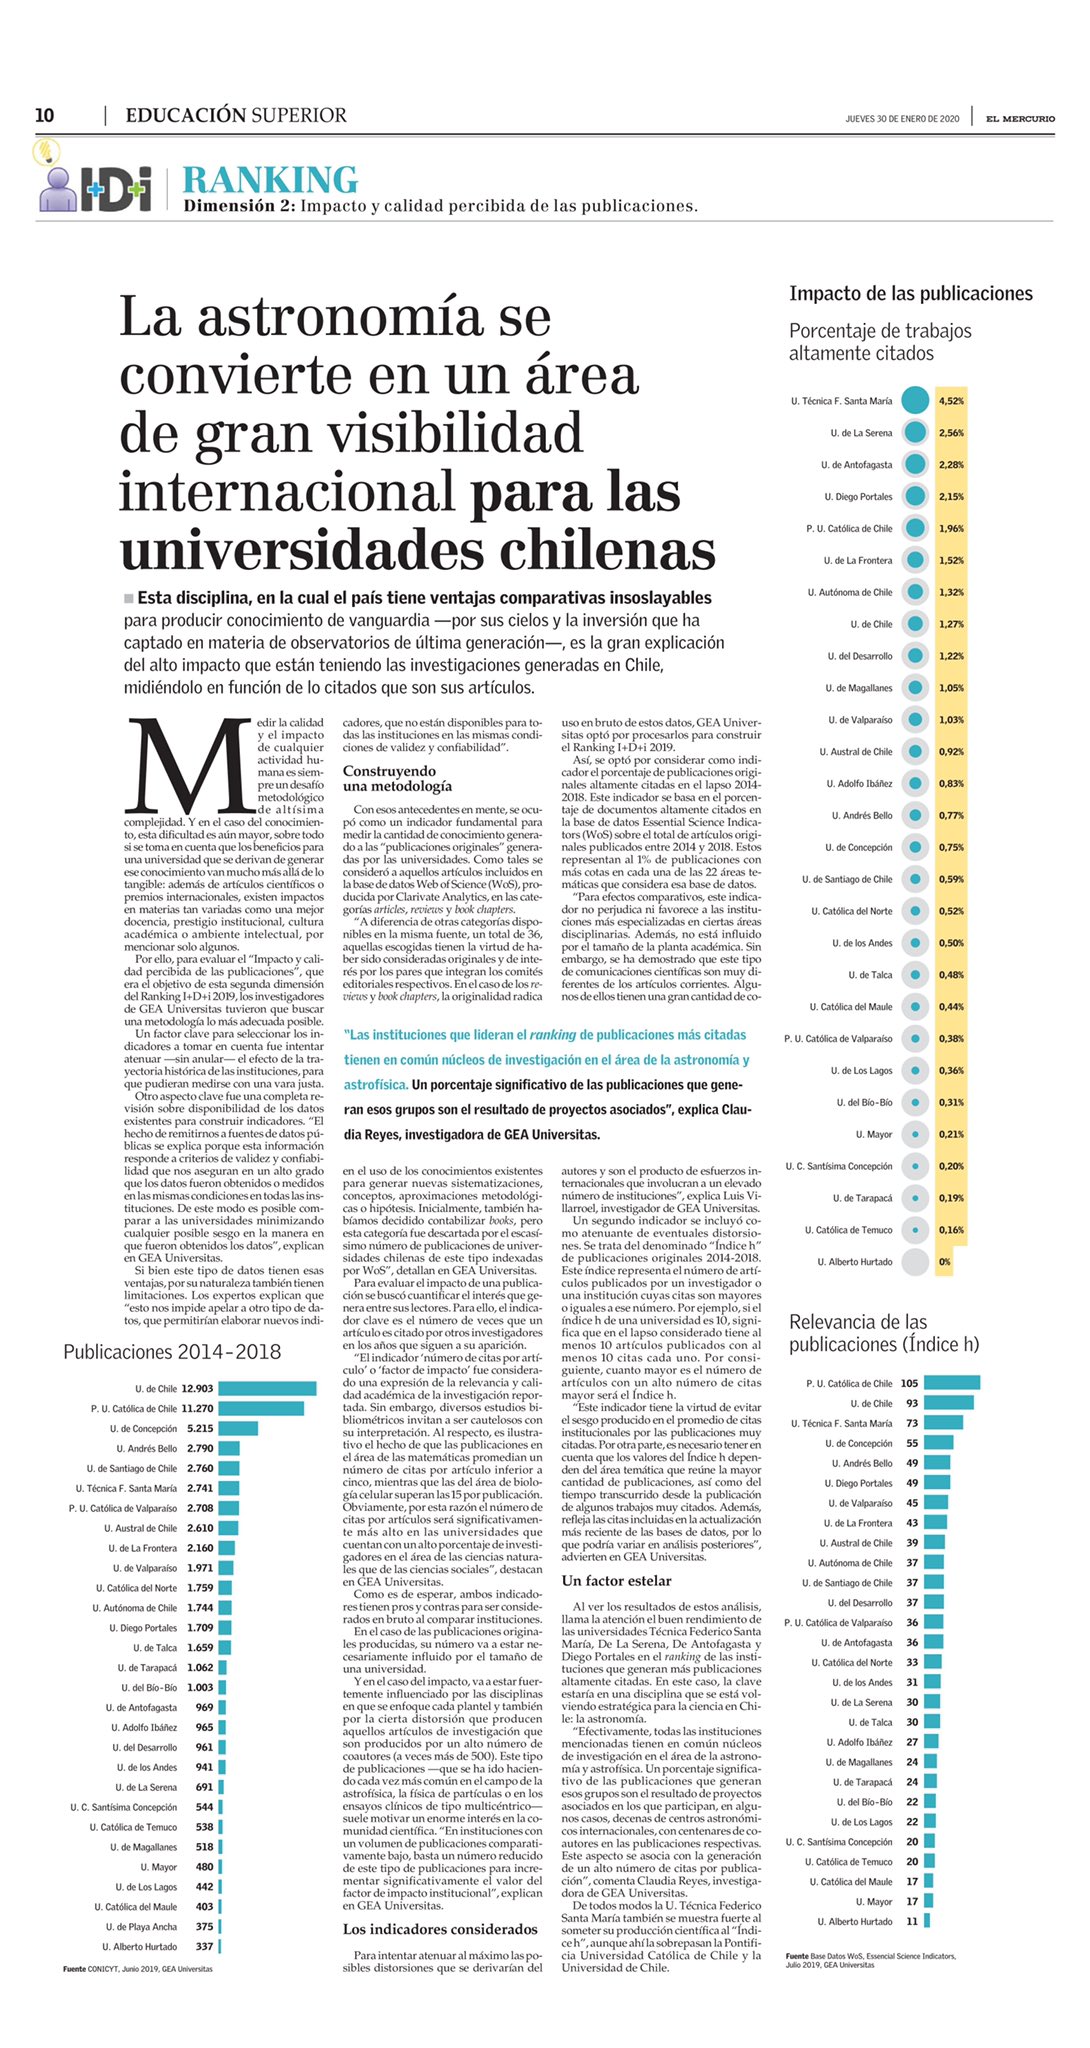 ULS destaca entre las Universidades chilenas con mayor número de publicaciones científicas altamente citadas